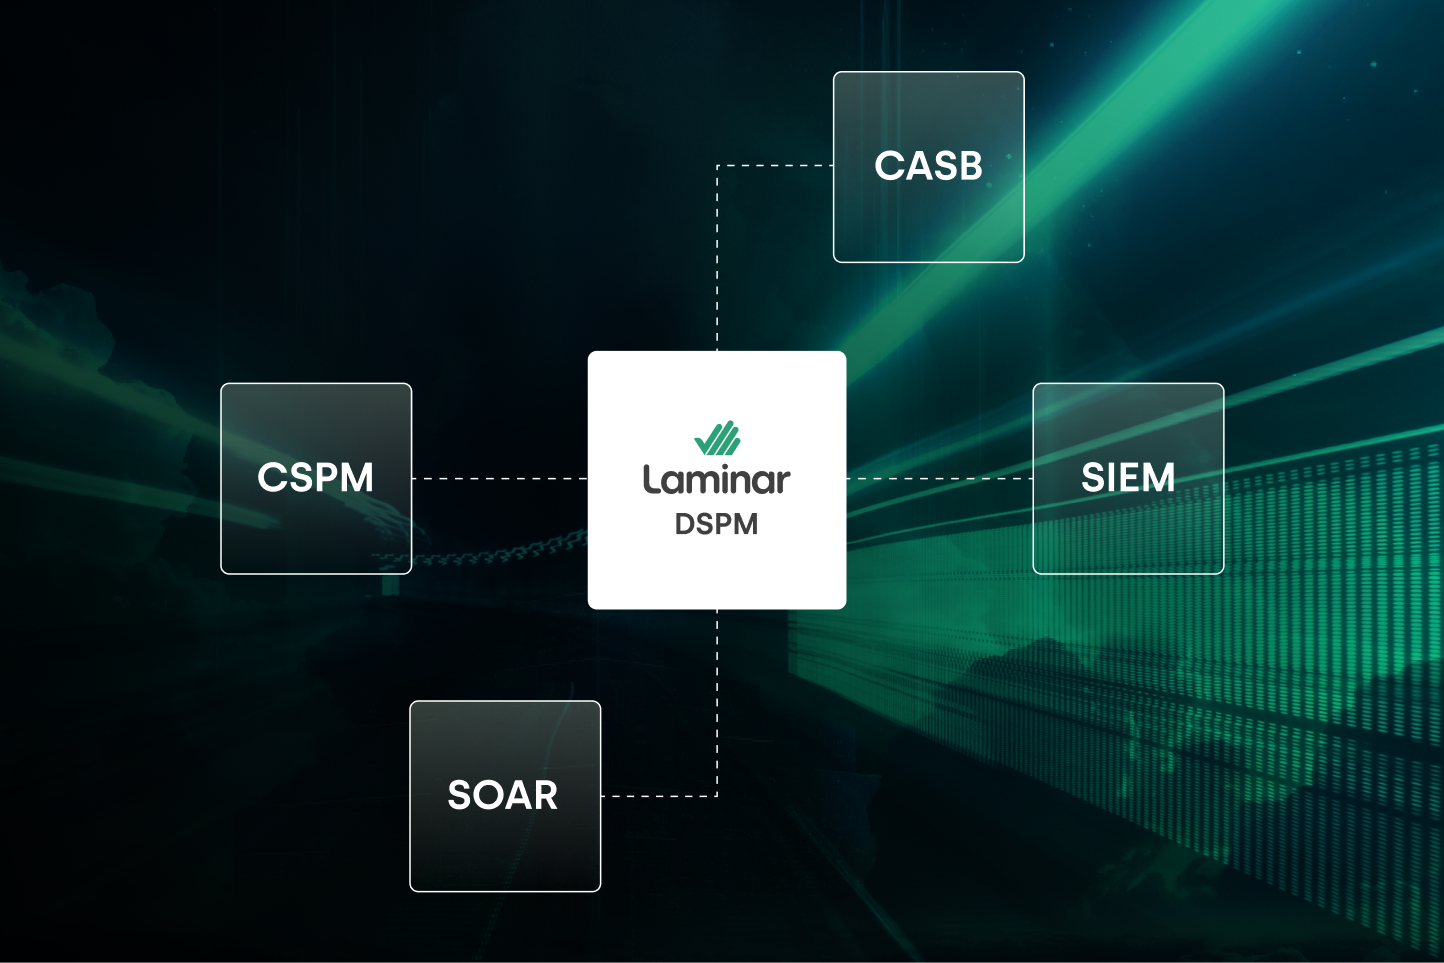 Laminar Broadens Data Security for Multi-Cloud